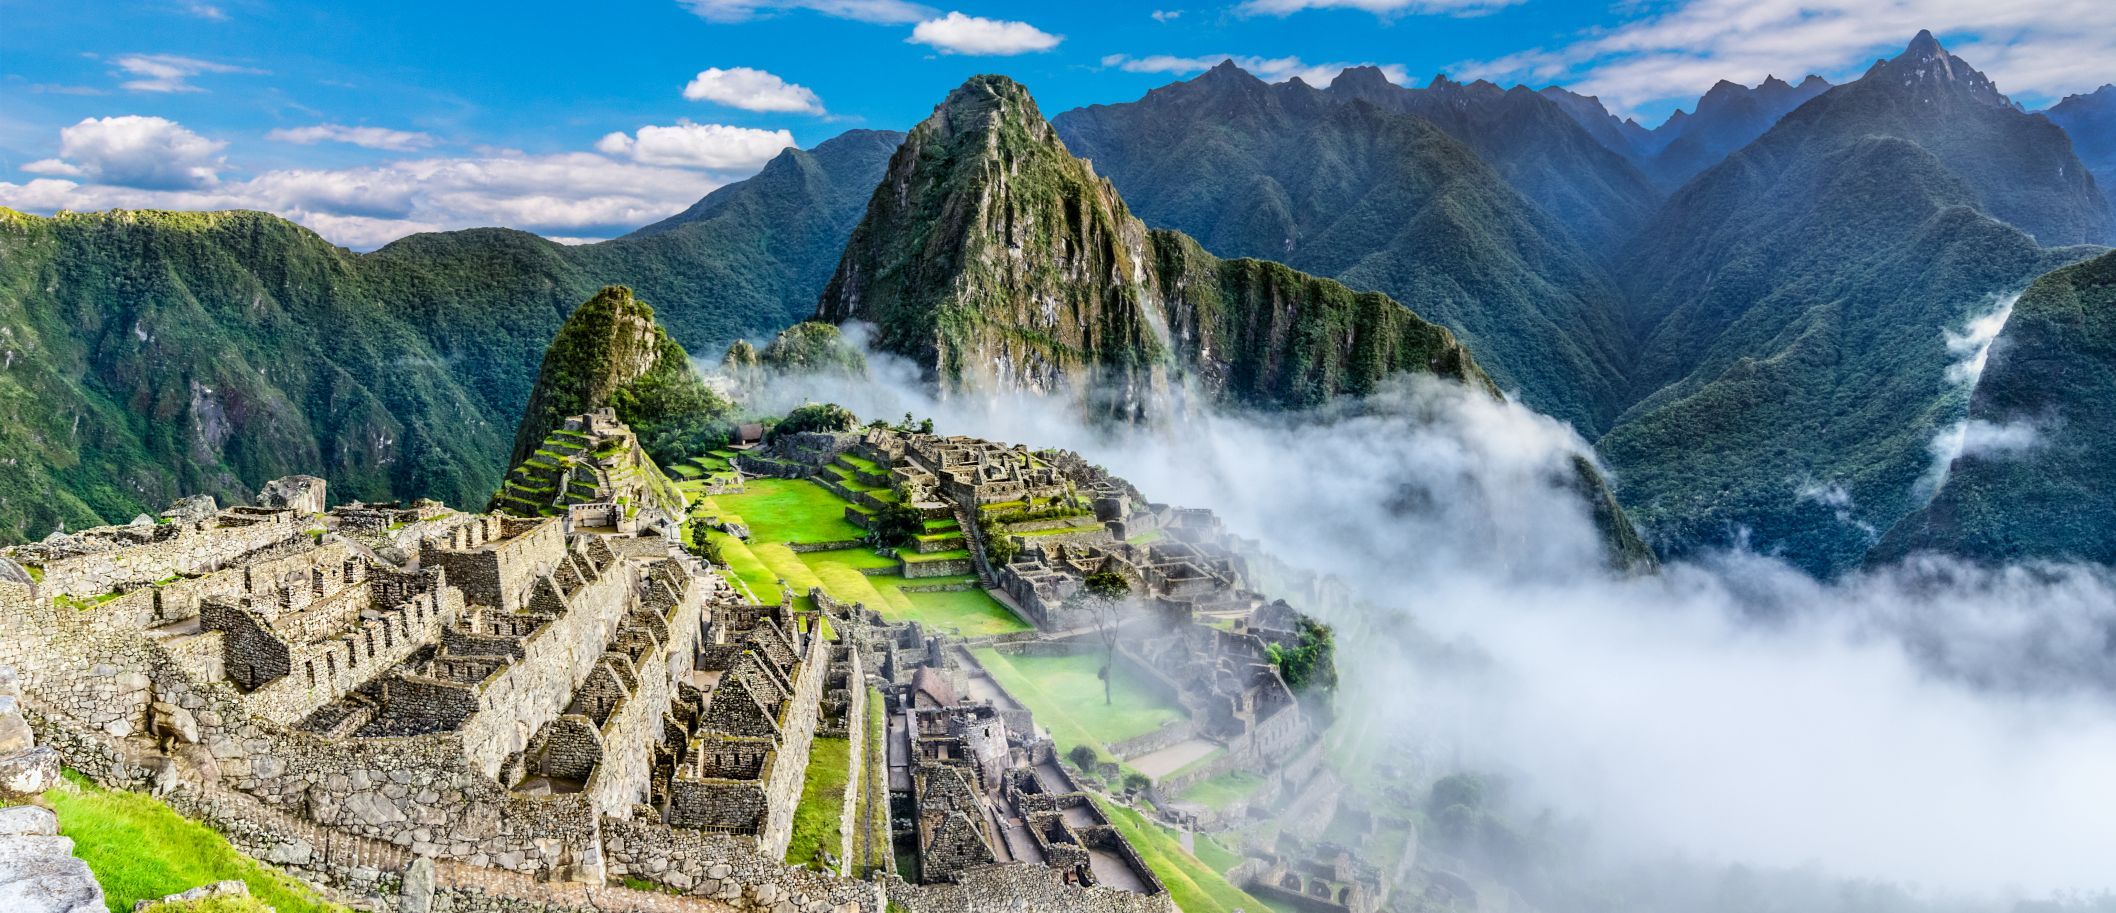  Machu-Picchu.jpg 